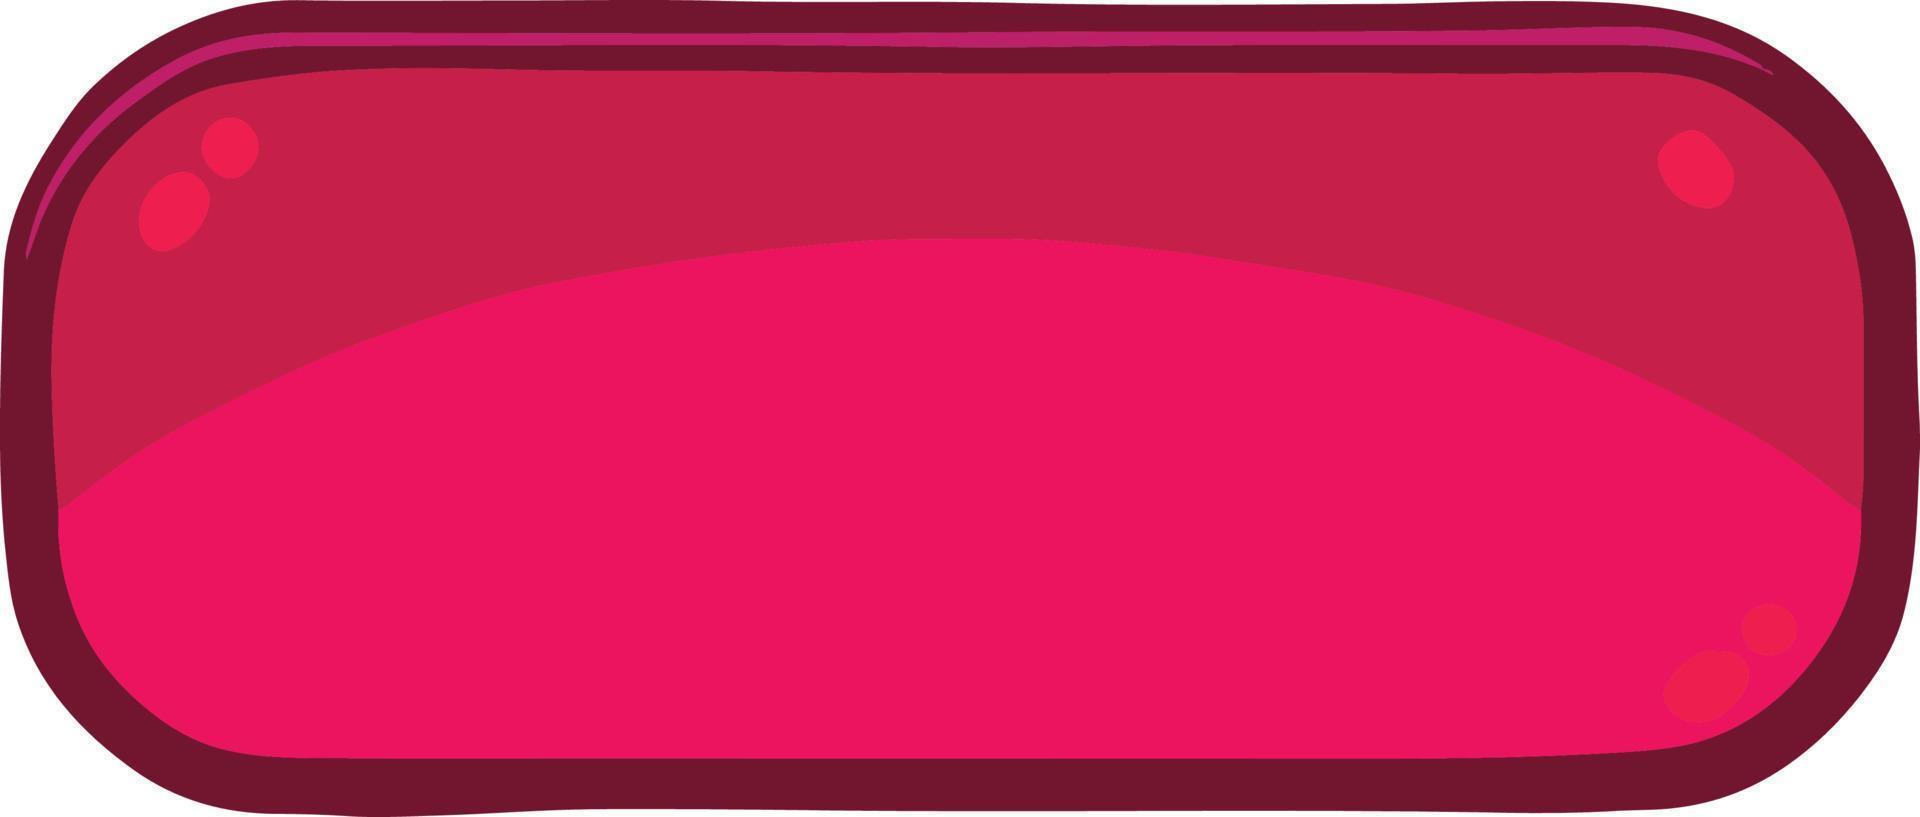 botão rosa retangular alongado para um jogo ou site vetor